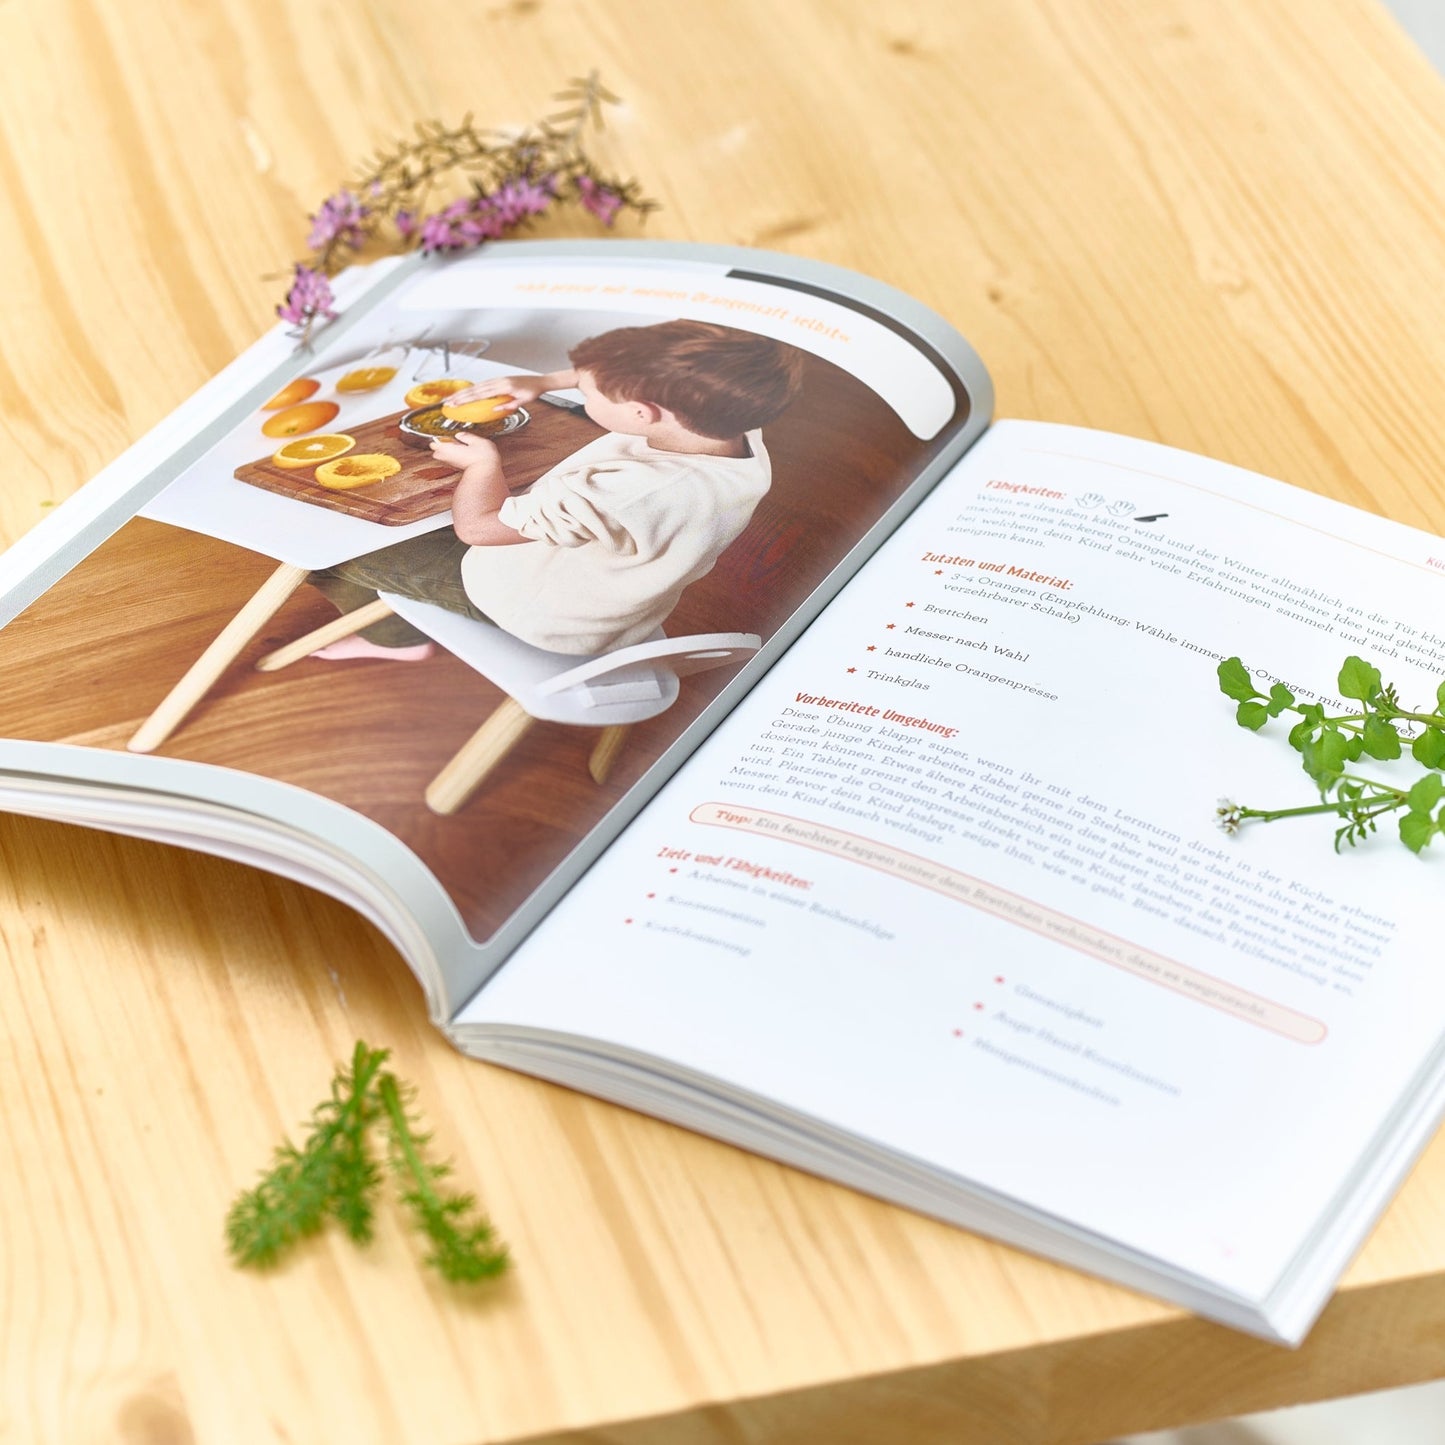 Mein Buch:  "Montessori-Ideen für die Küche, Kochen mit Kindern", Julia Peneder